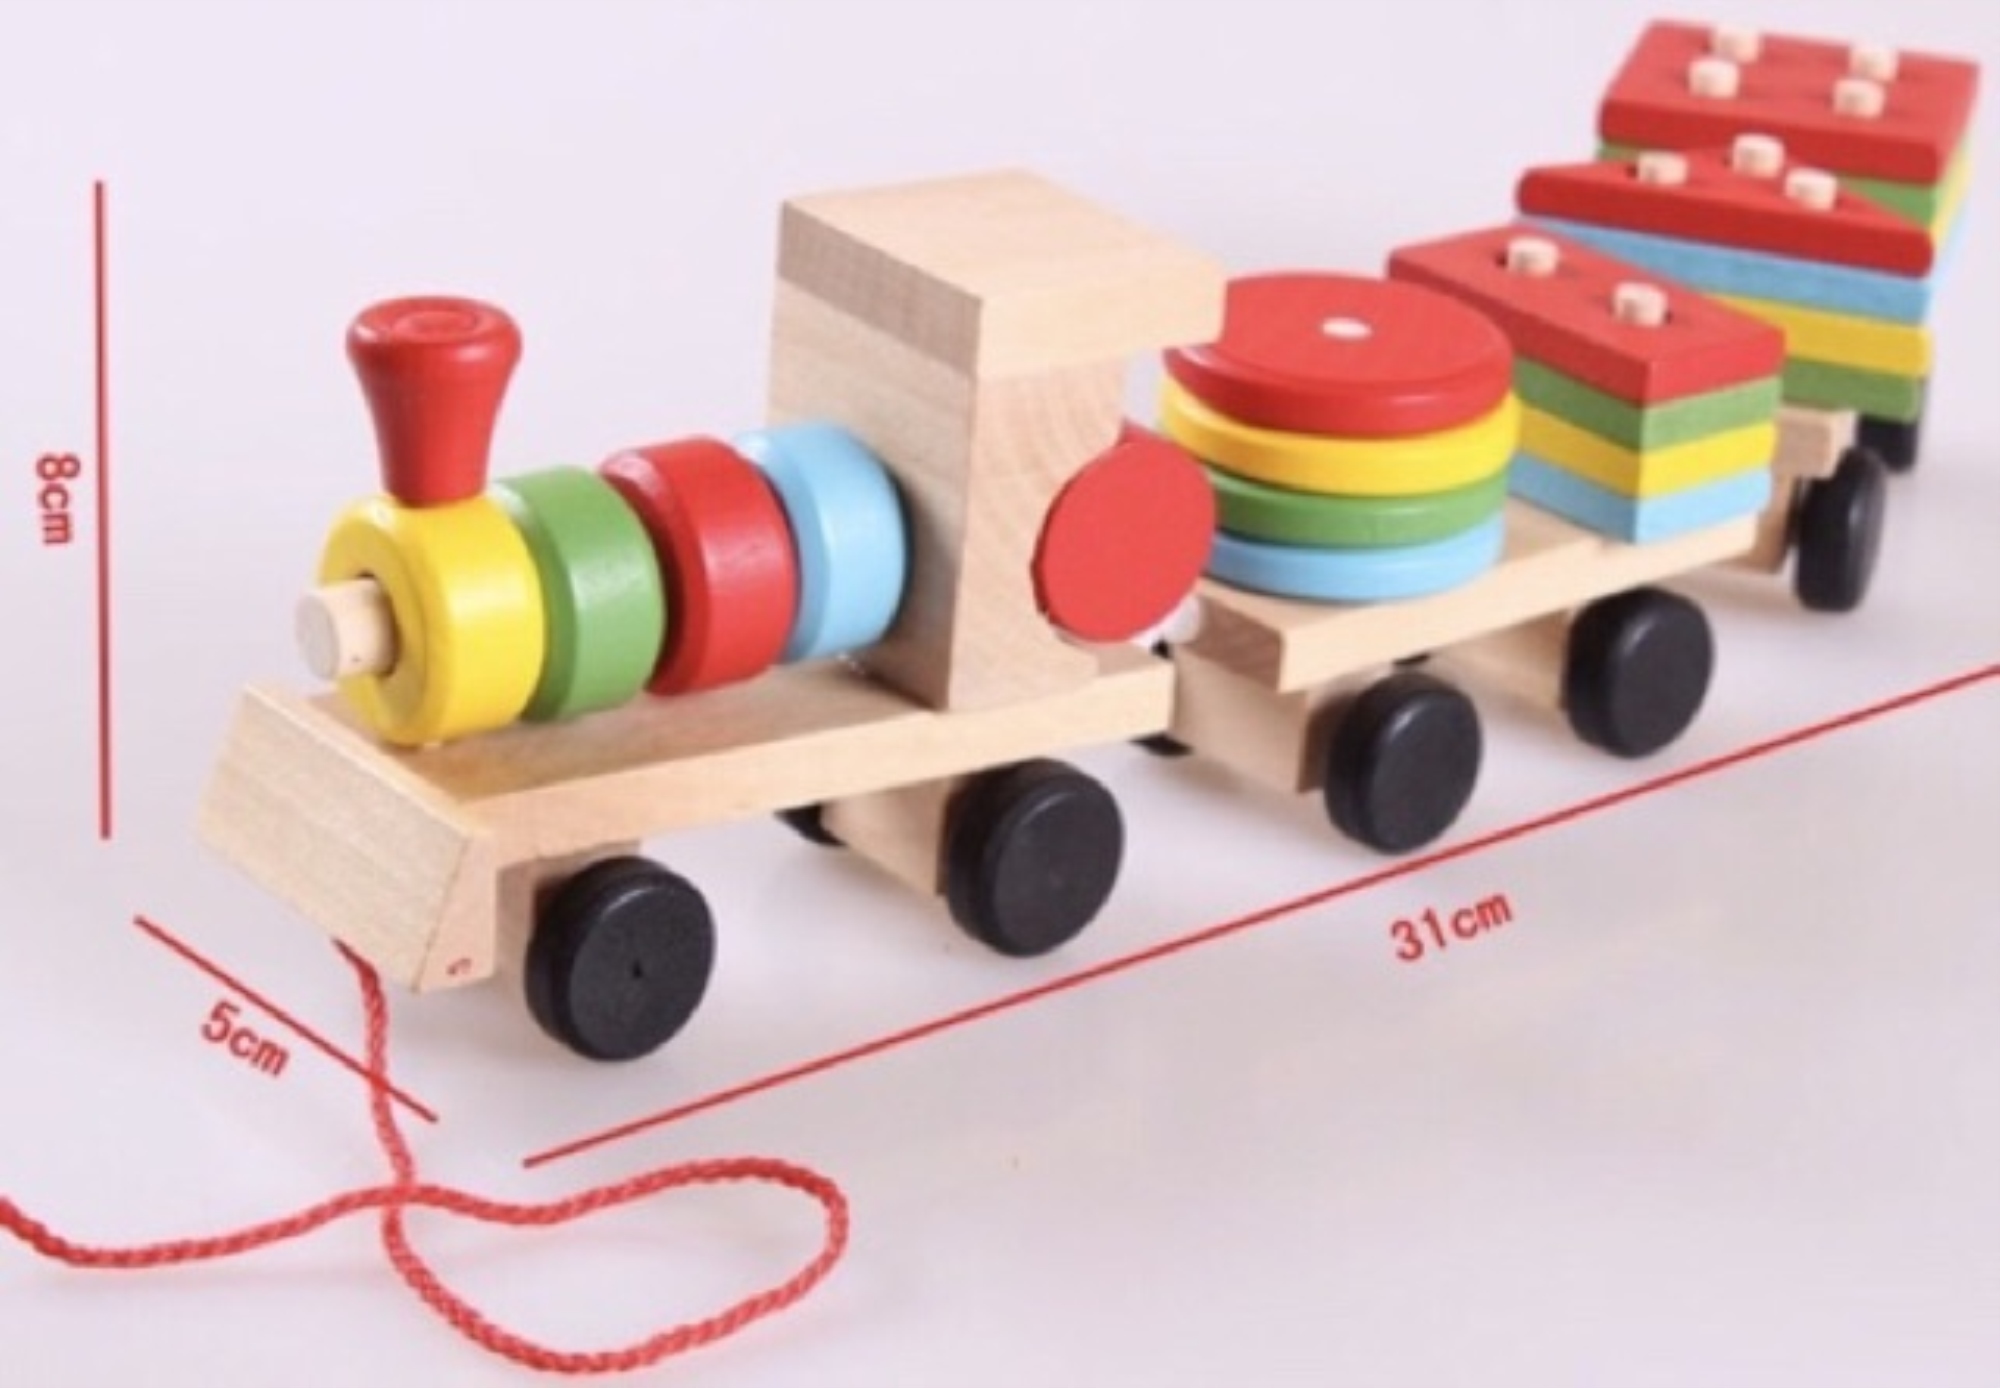 ✎❏☒  🚚ส่งฟรี 📌 ของเล่นไม้ รถไฟอันปังแมน(แม่เหล็ก) -รถไฟบล็อคเสียบฆ้อนทุบ(ของเล่นลากจูงบล็อกต่อ)